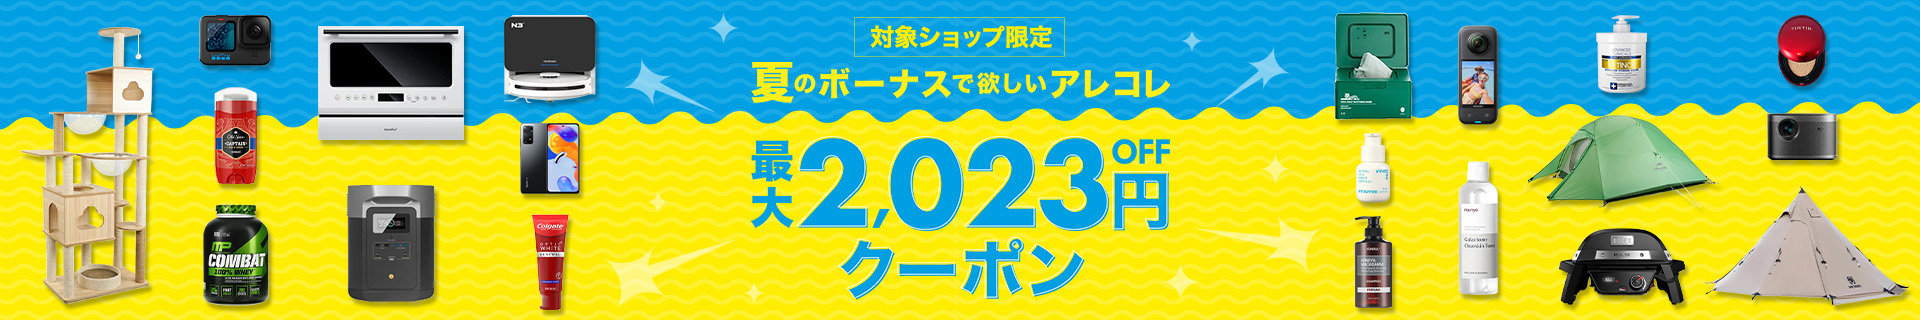 楽天海外通販 最大2,023円OFFクーポンキャンペーン